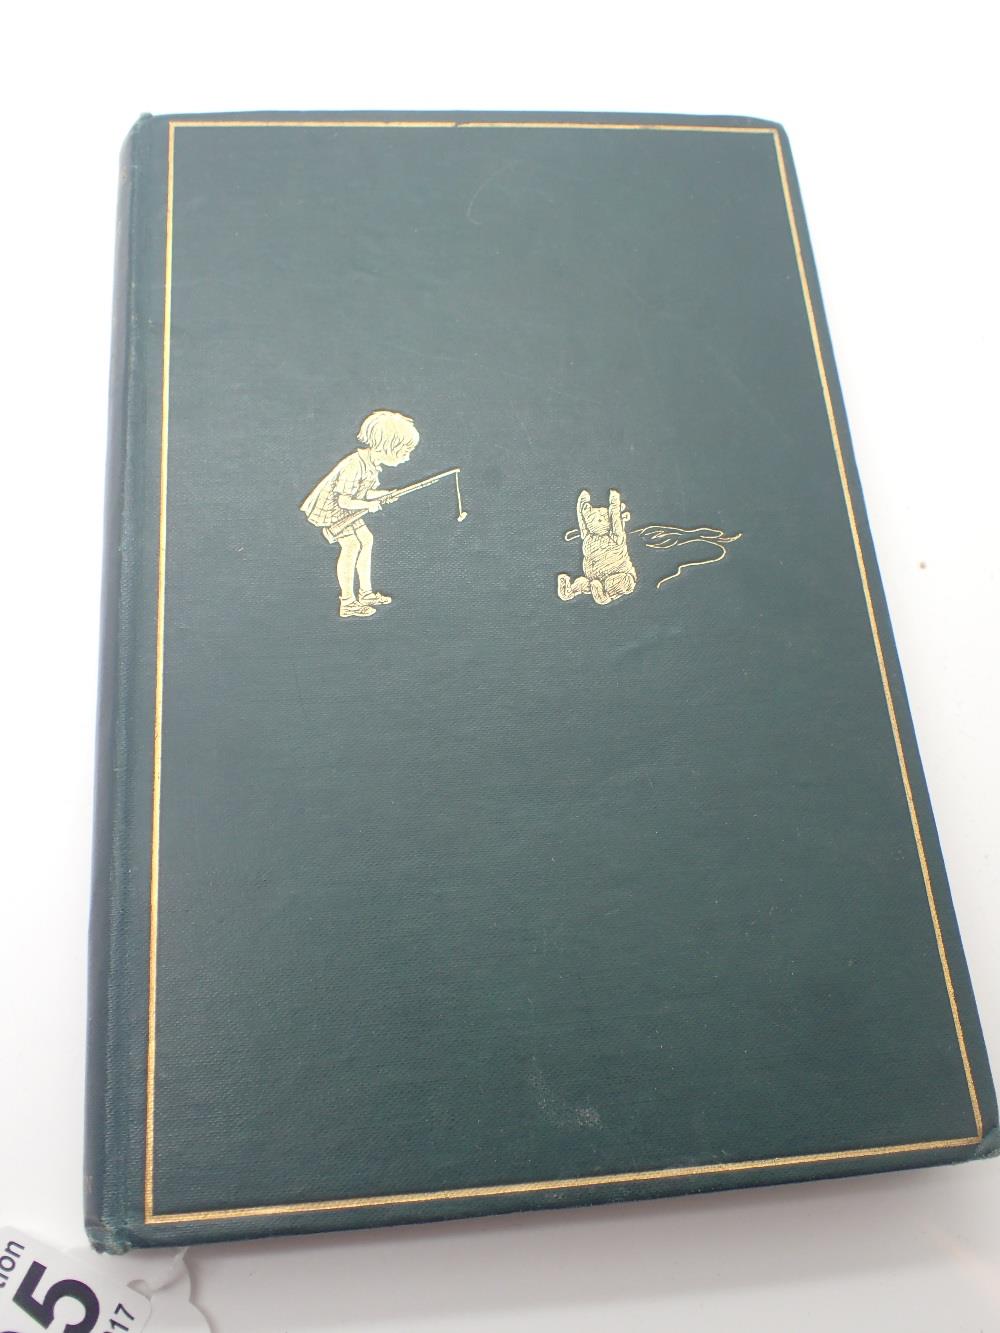 1930 hardback edition of Winnie The Pooh